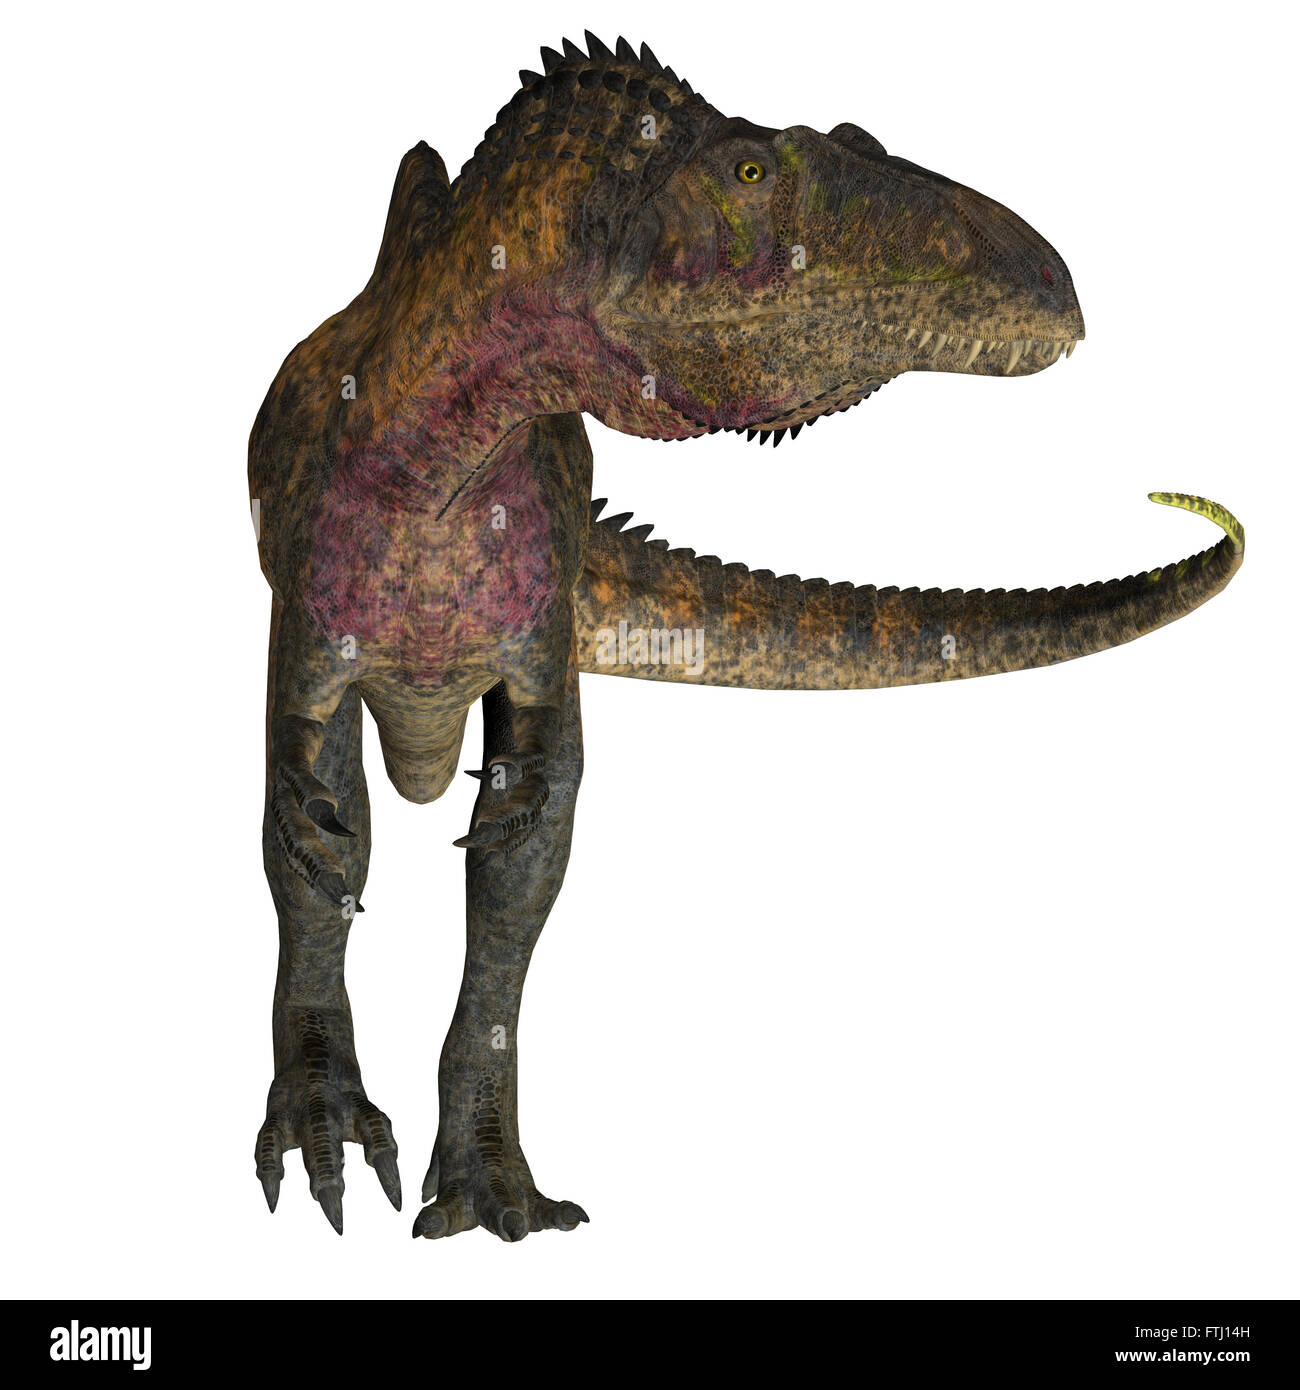 Acrocanthosaurus war ein theropoder fleischfressender Dinosaurier, der während der Kreidezeit in Nordamerika lebte. Stockfoto